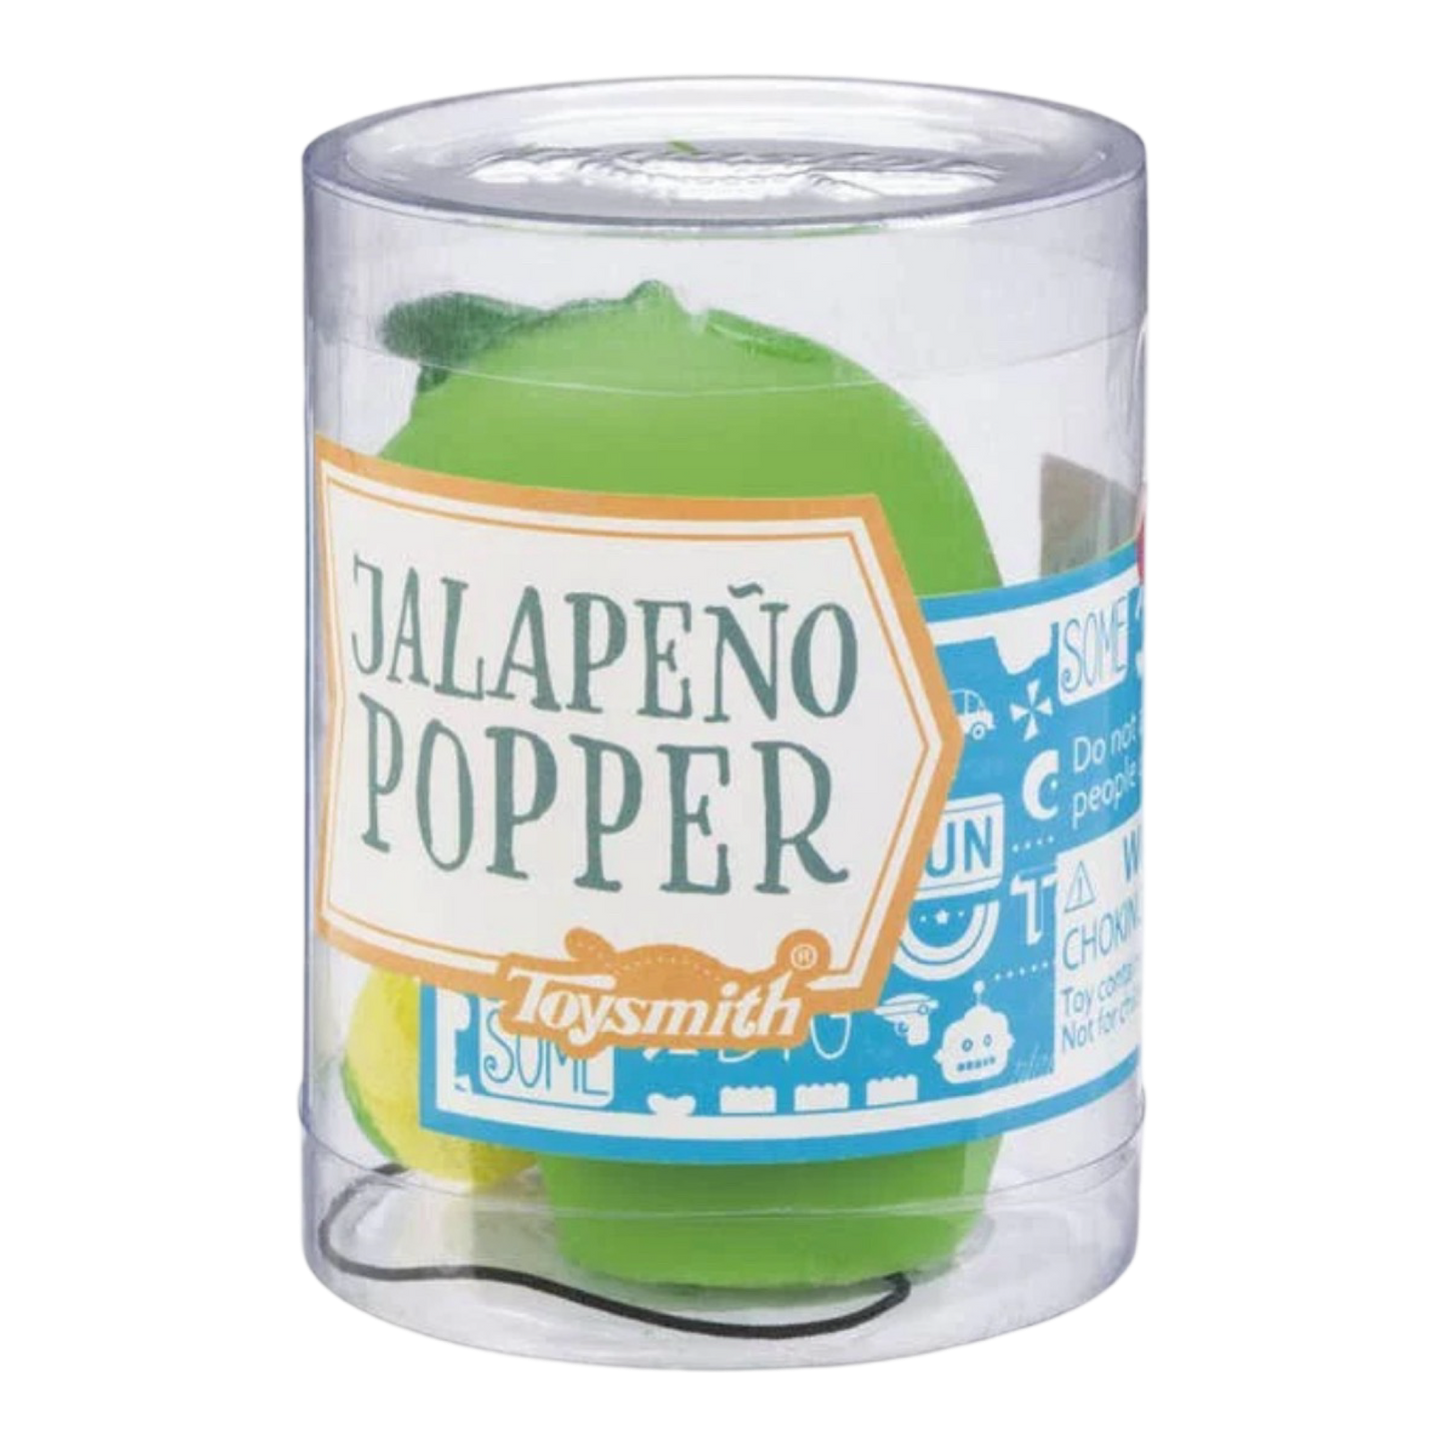 Jalapeno Popper